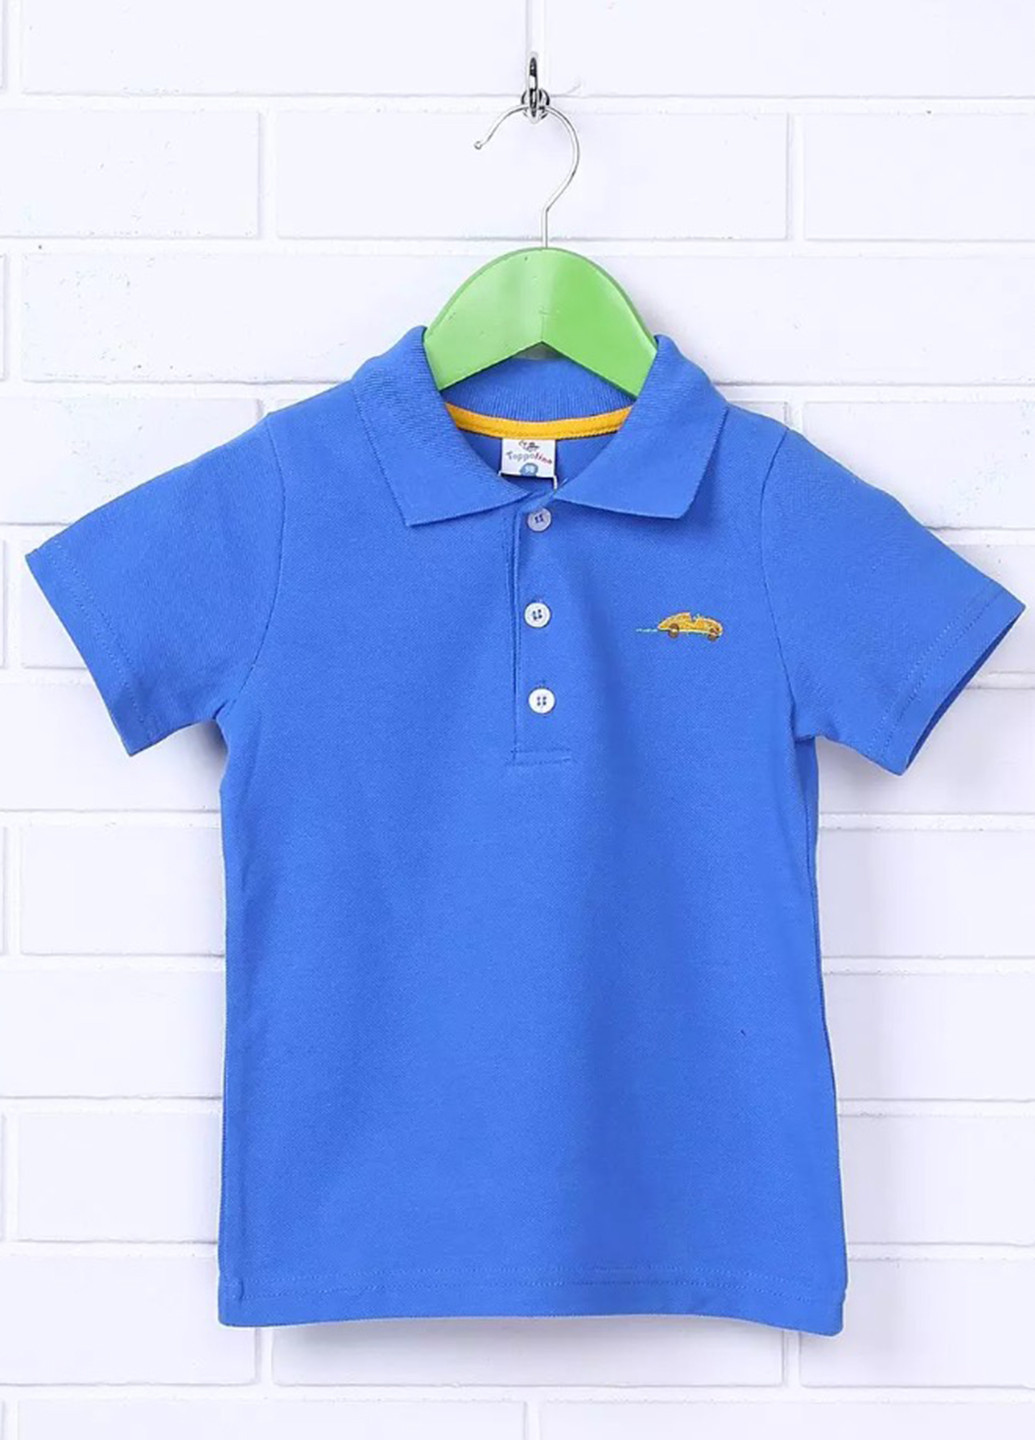 Светло-синяя детская футболка-поло для мальчика Topolino с рисунком